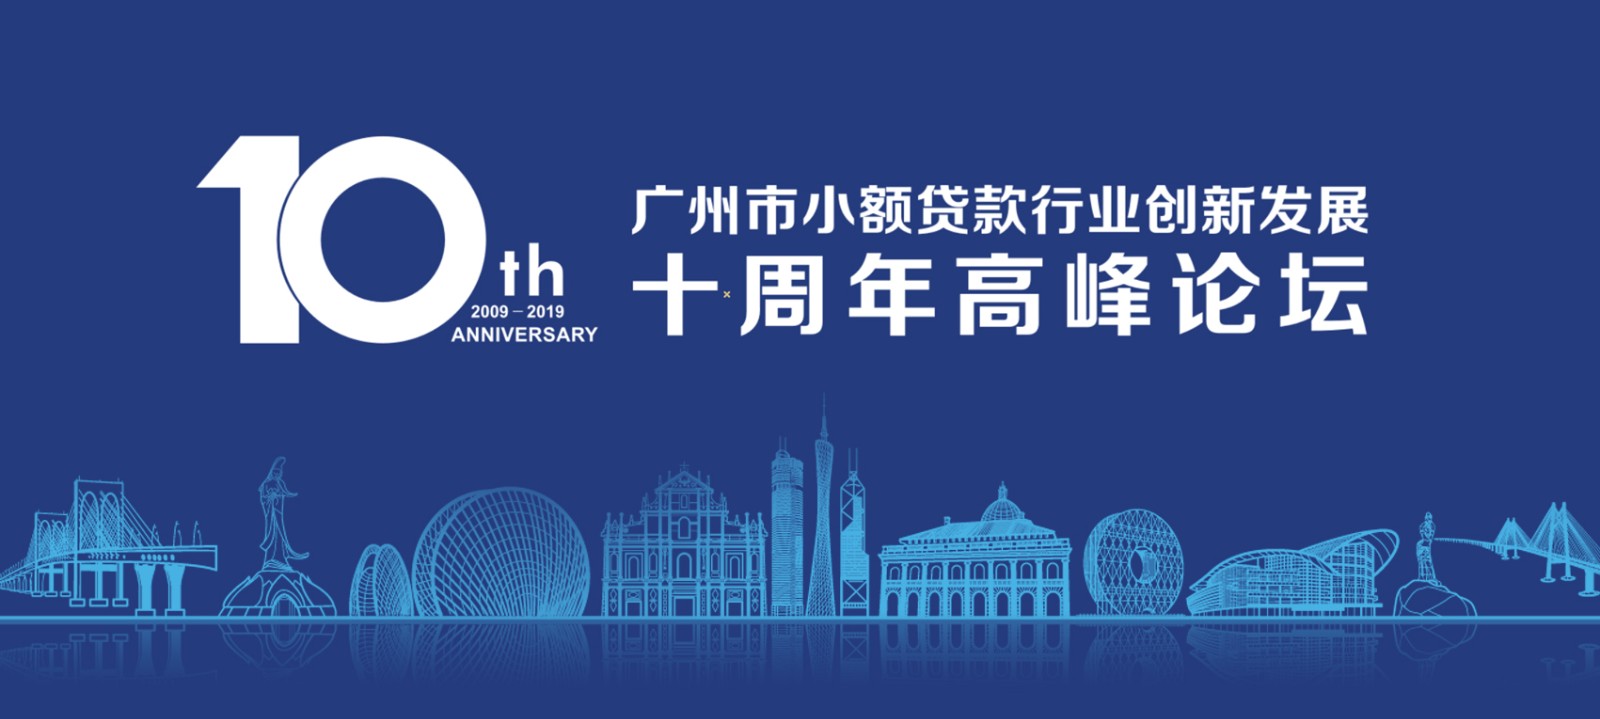 广州市小额贷款行业创新发展十周年高峰论坛